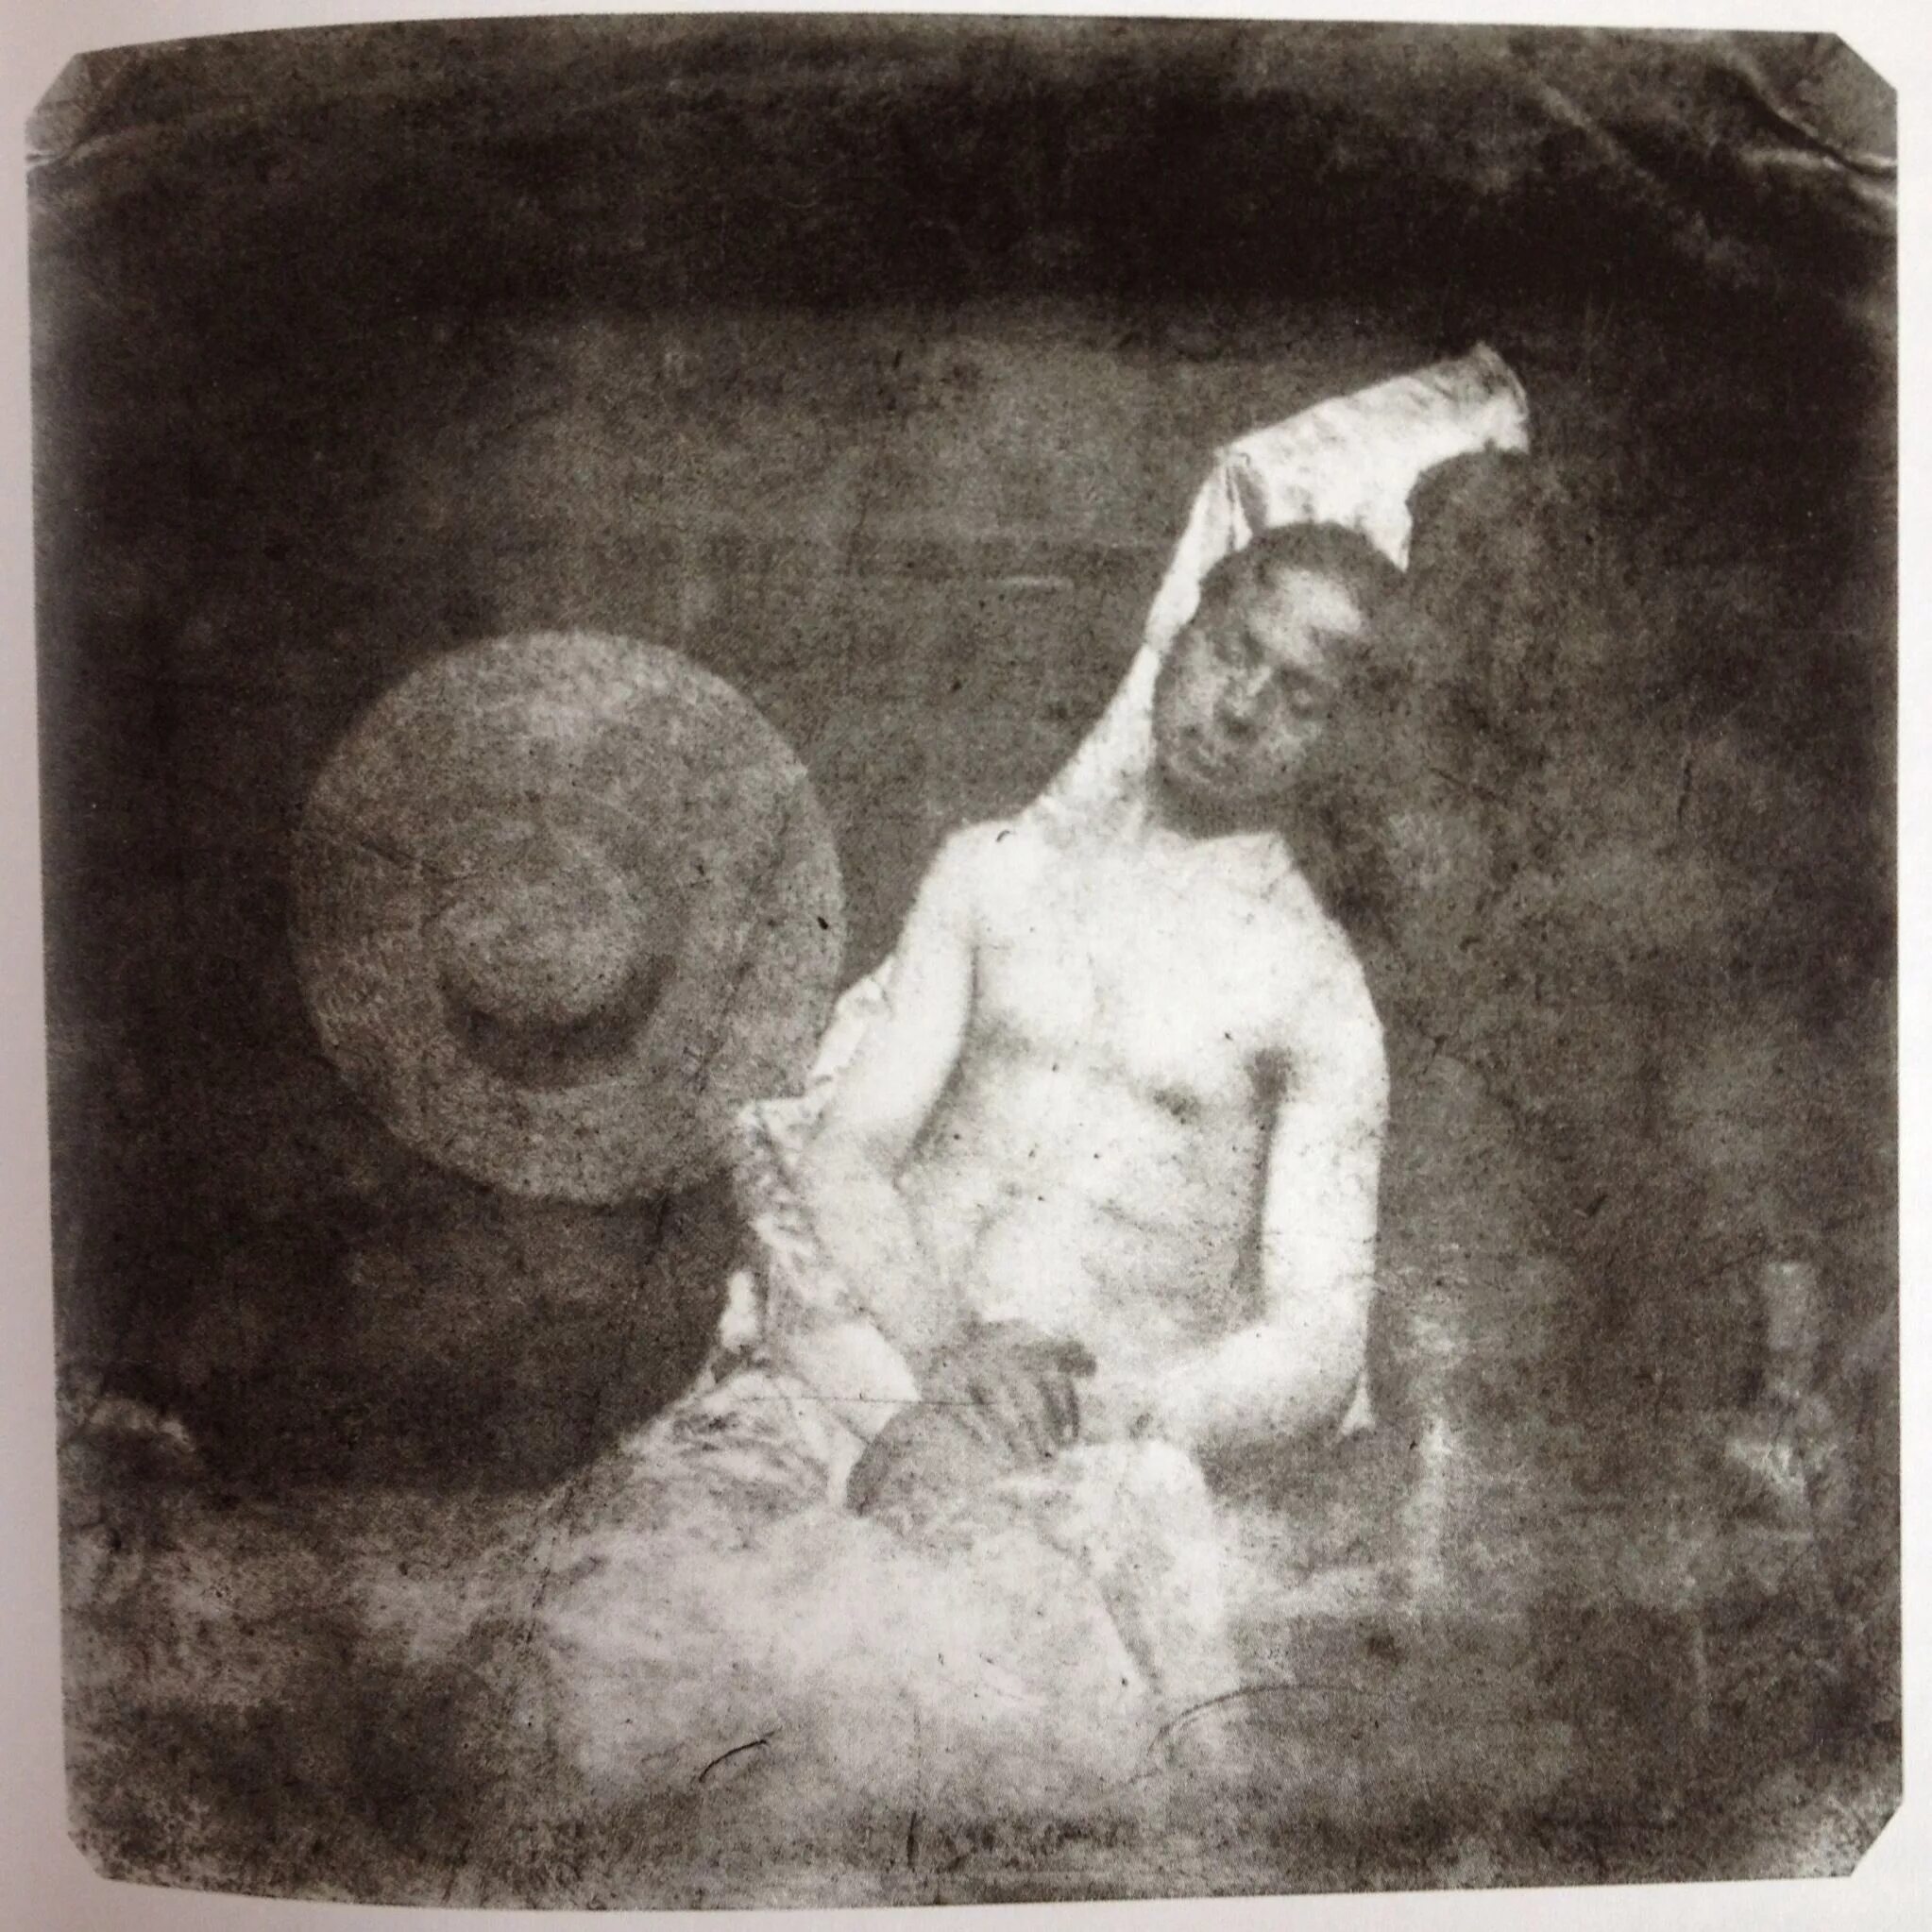 Автопортрет в образе утопленника (1840) Ипполита Баярда. Когда был сделан первый снимок